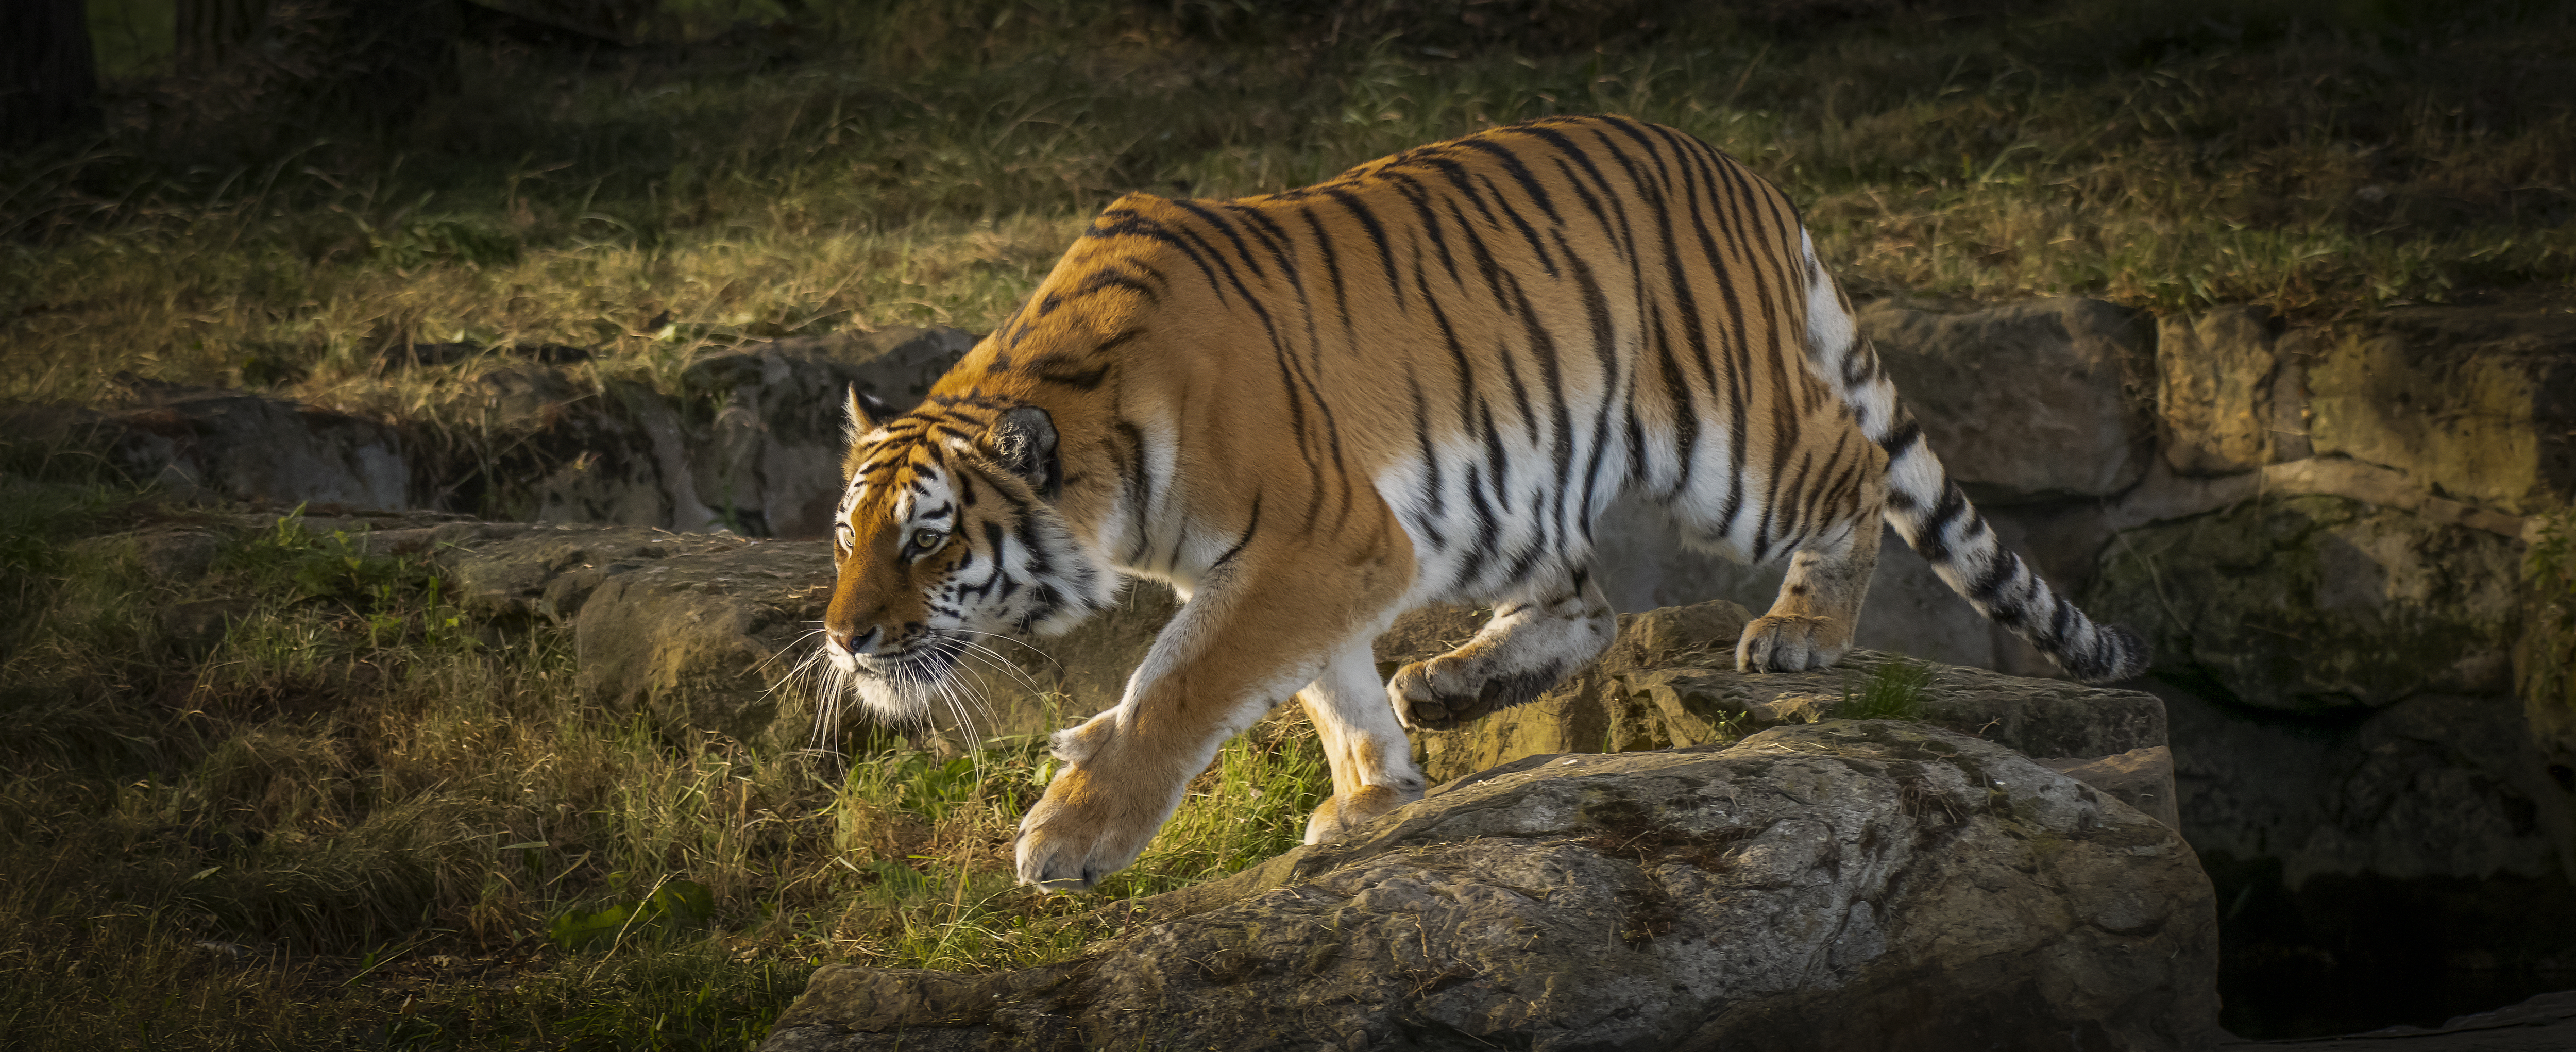 Фото амурский тигр, большая кошка больших размеров